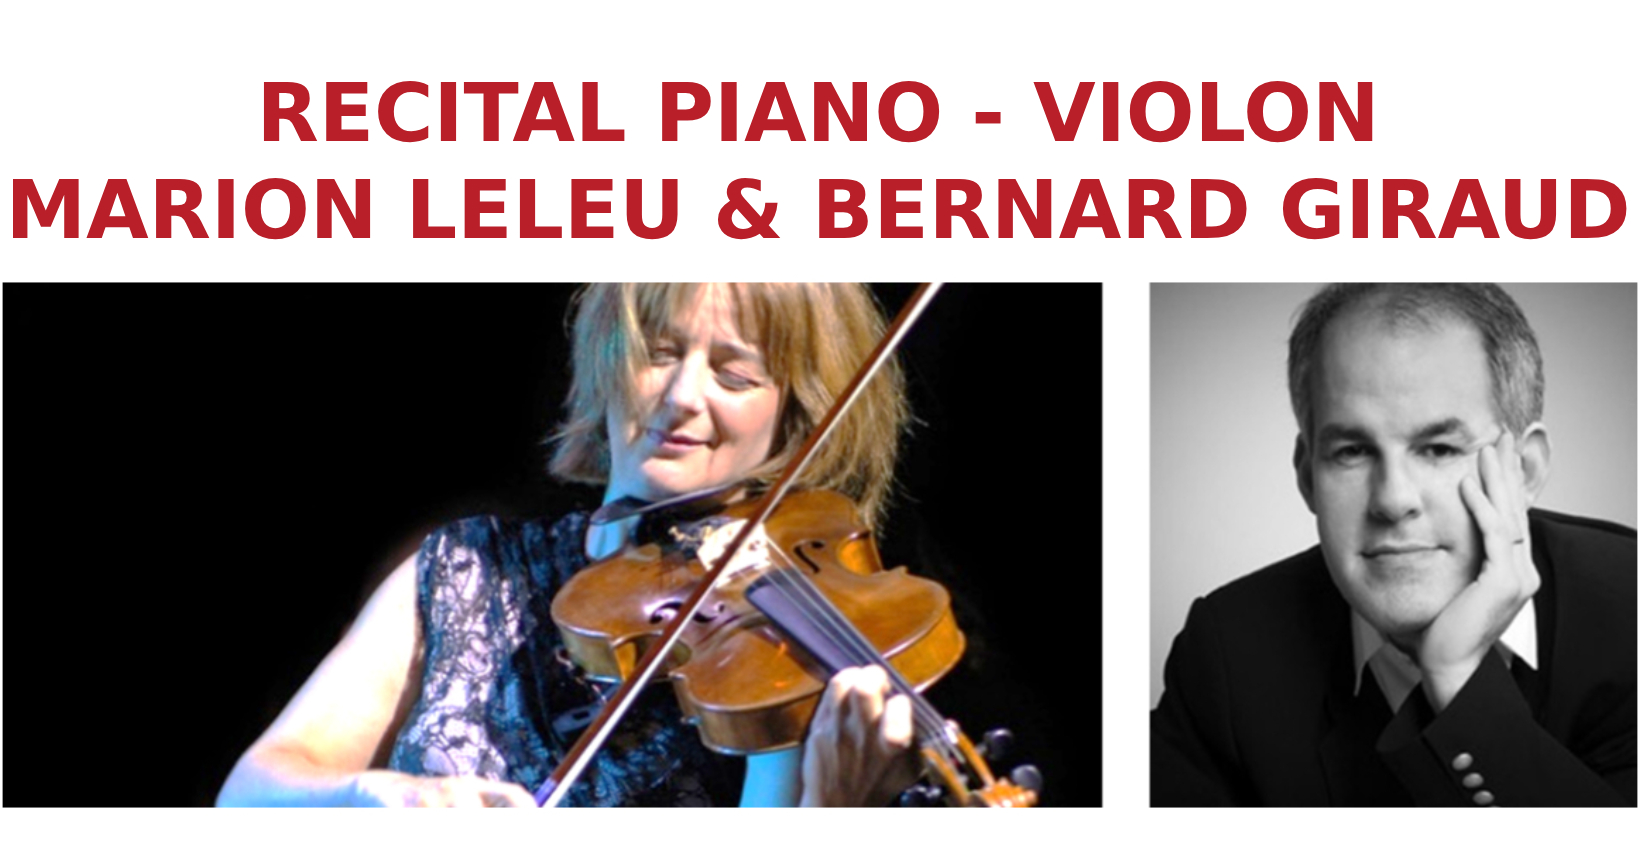 Récital piano - Violon - Marion Leleu & Bertrand Giraud en collaboration avec Yves Robbe